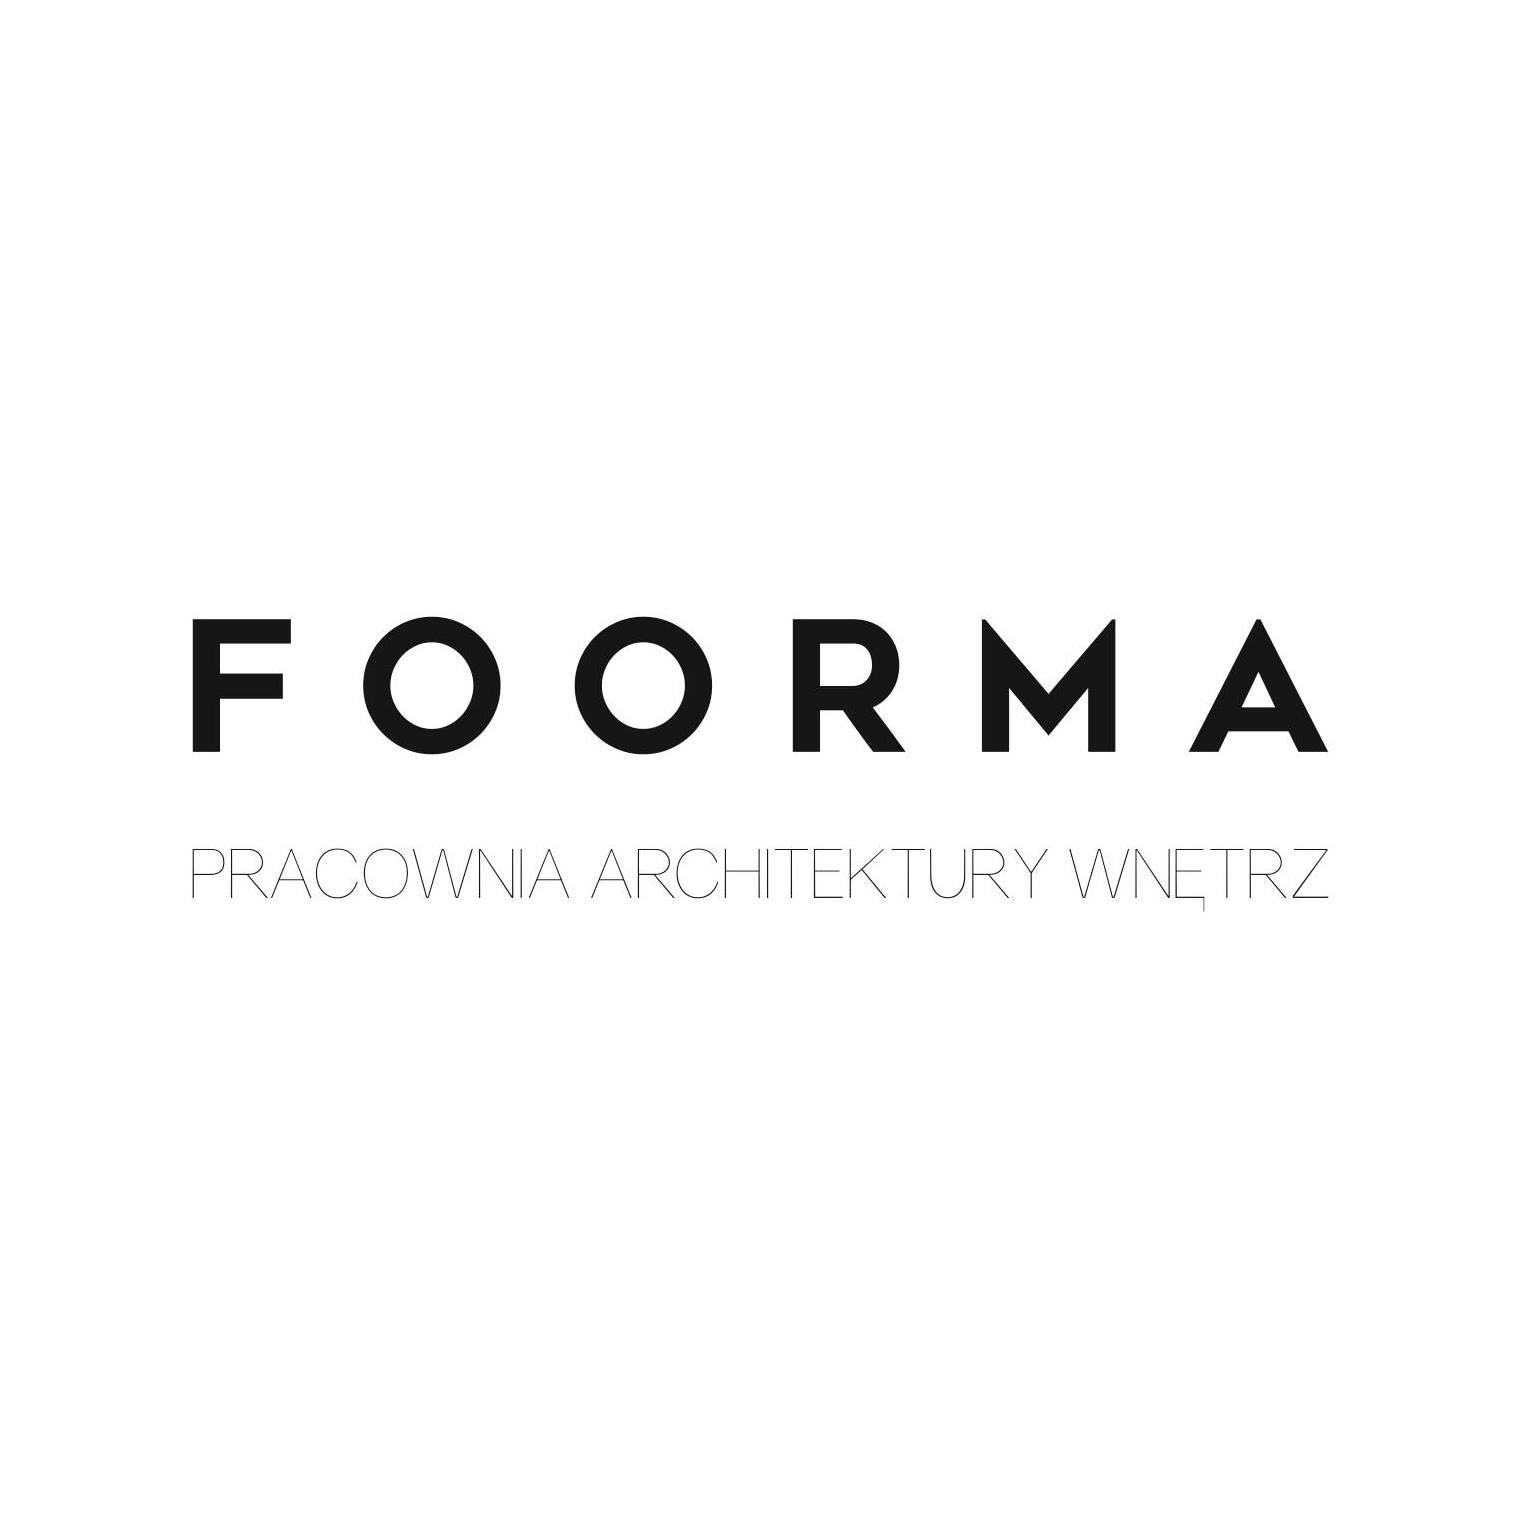 FOORMA - Pracownia Architektury Wnętrz Dorota Pilor, Oświęcim, małopolskie